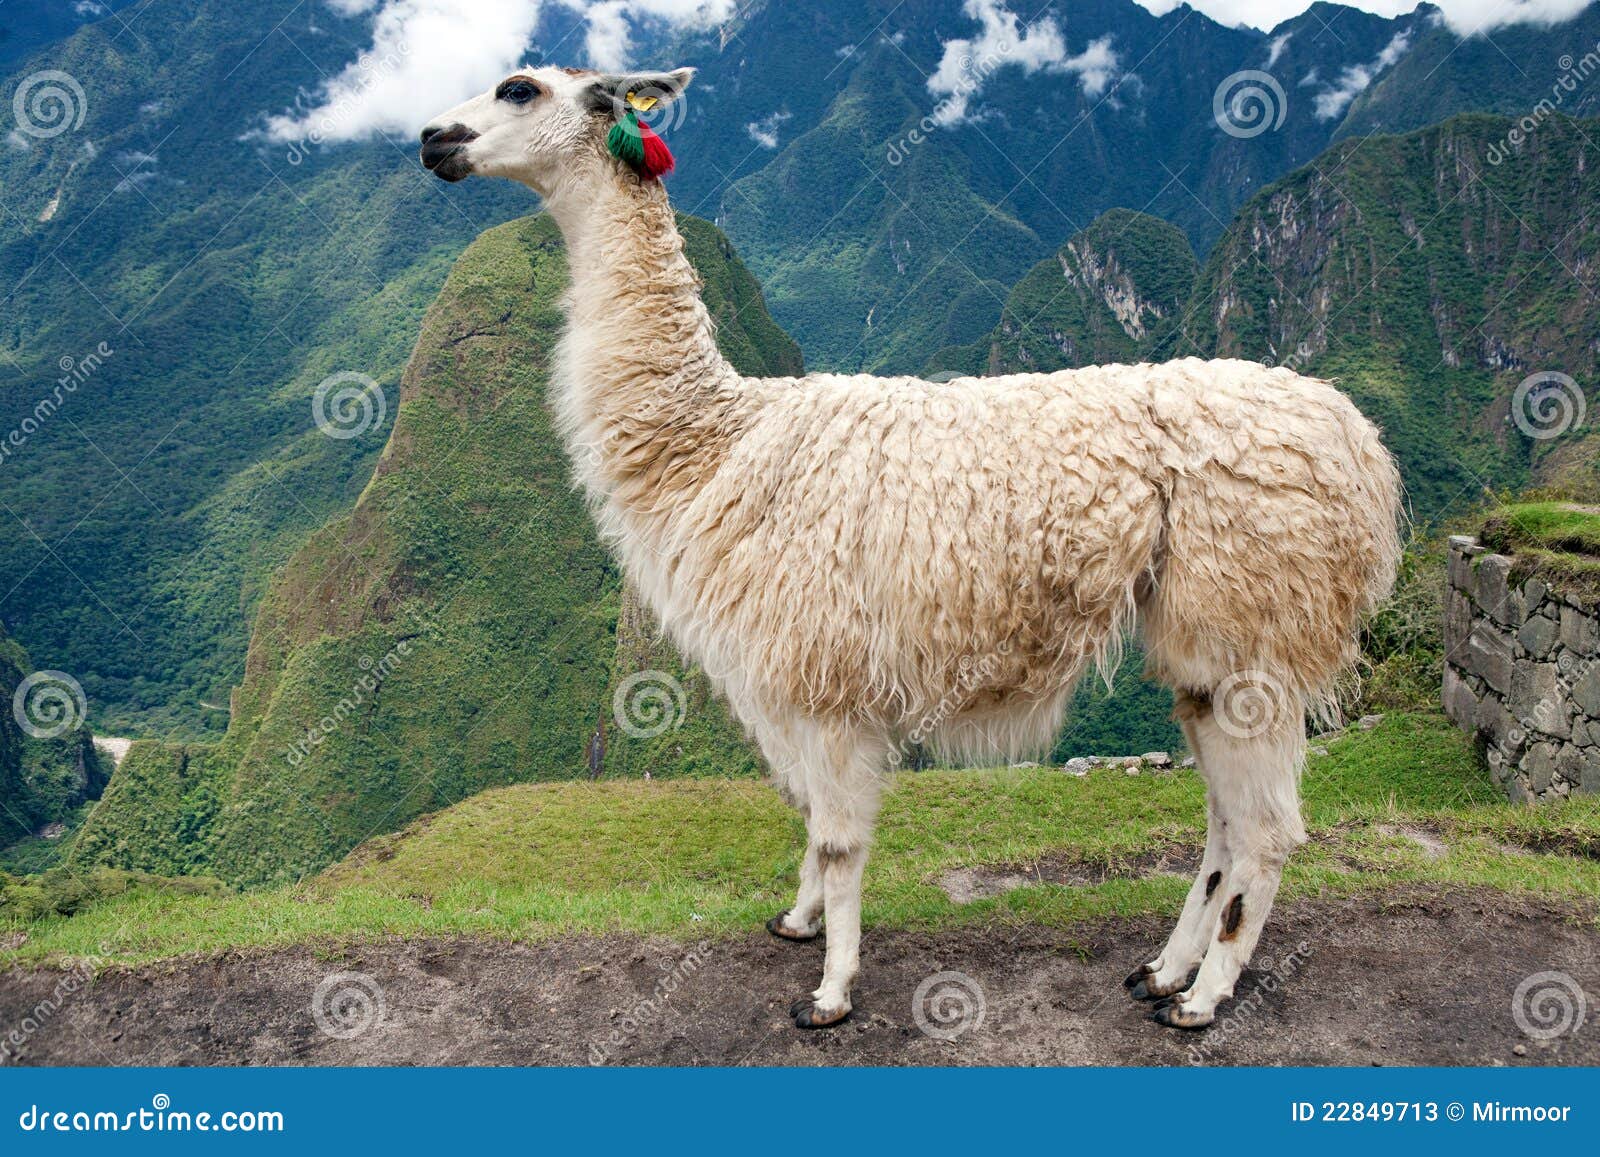 llama at lost city of machu picchu - peru